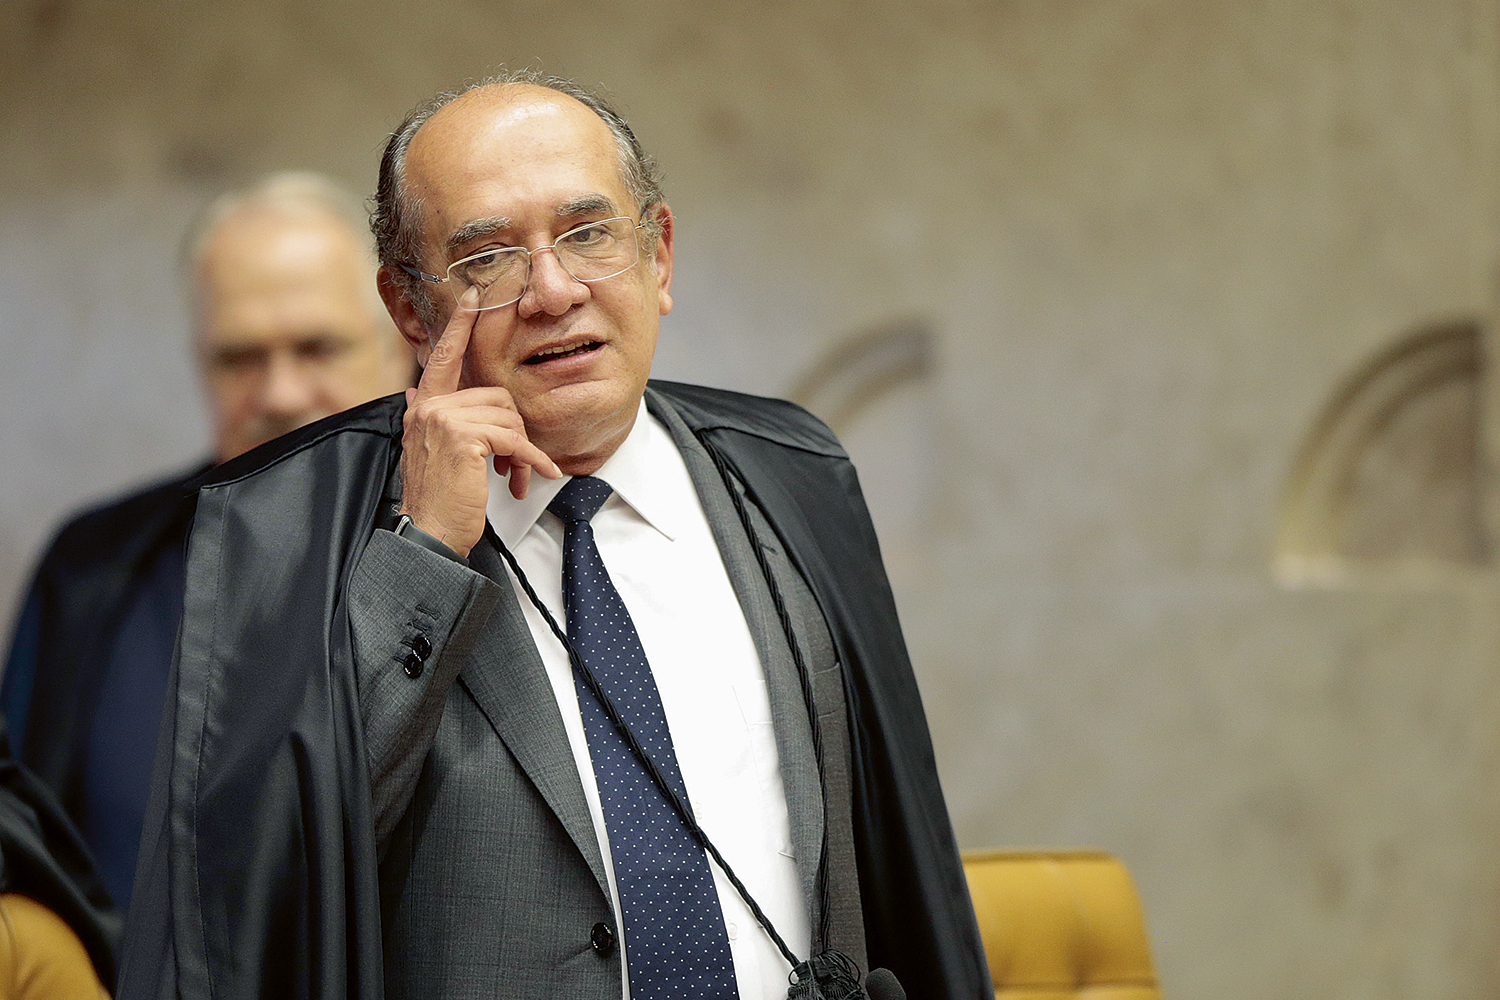 ANEXO IV - Gilmar Mendes: o advogado revela trama para constranger o ministro -